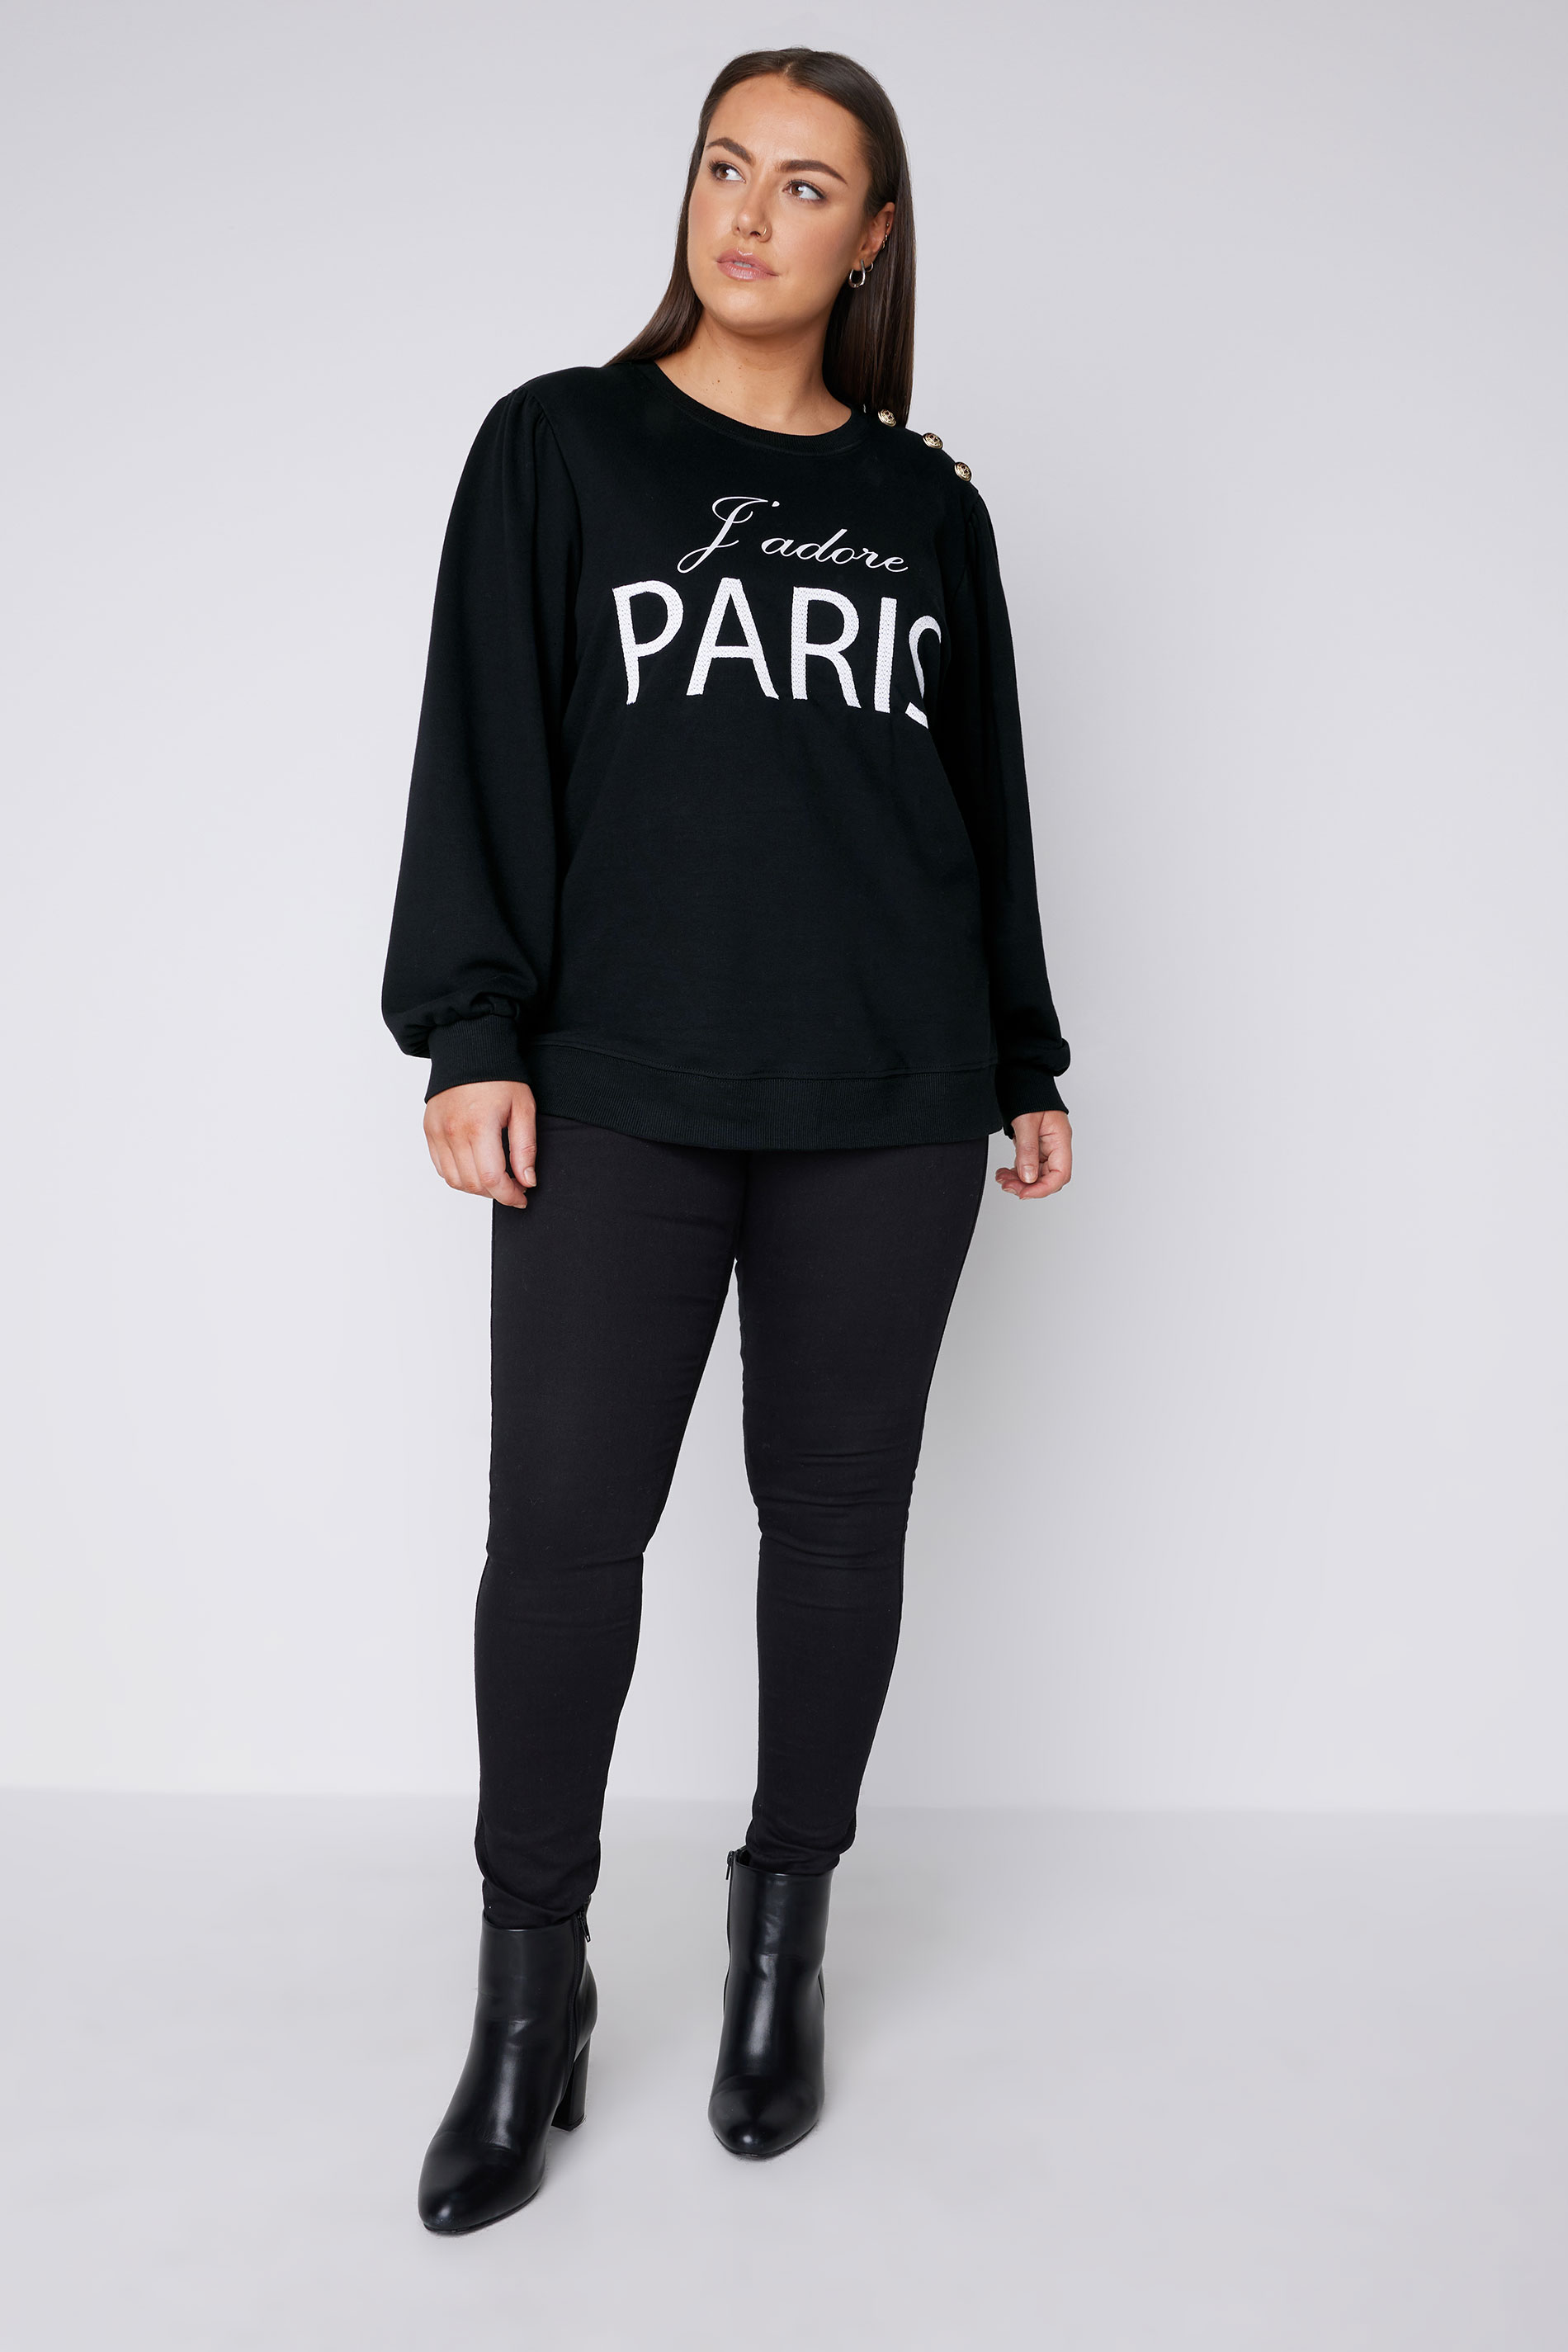 EVANS Plus Size Black 'Paris' Slogan Embroided Sweatshirt | Evans 2